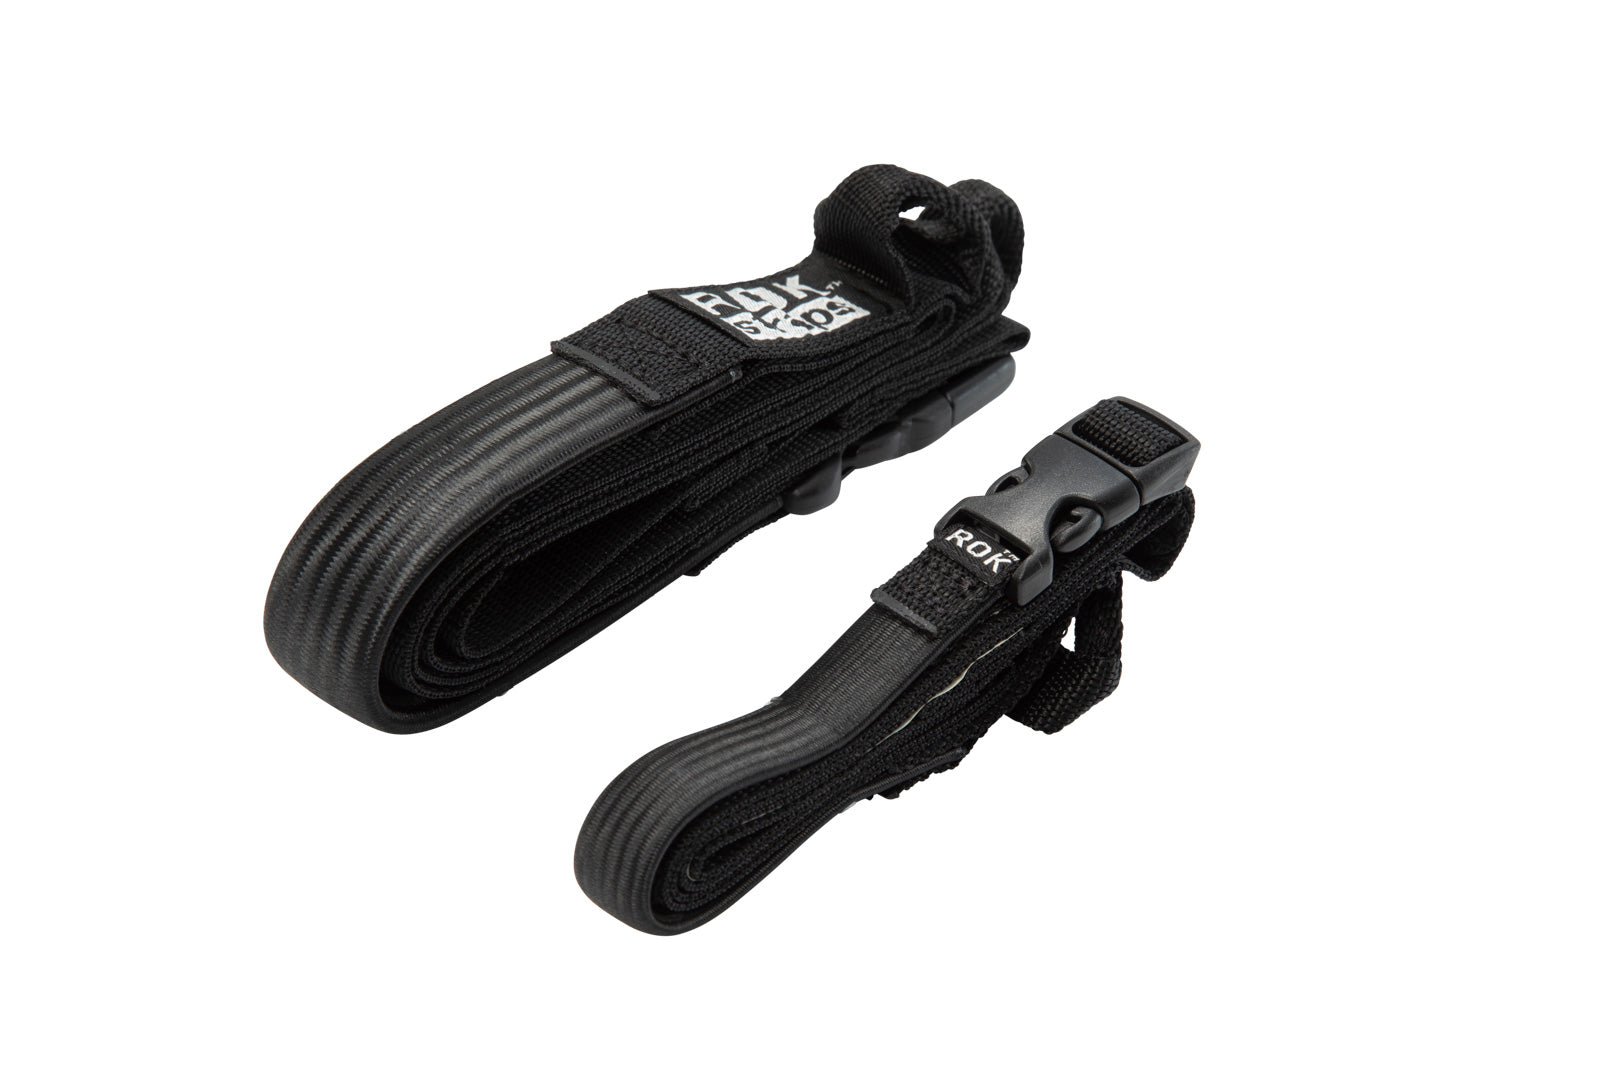 ROK Straps 2 adjustable straps 310-1060 mm Black